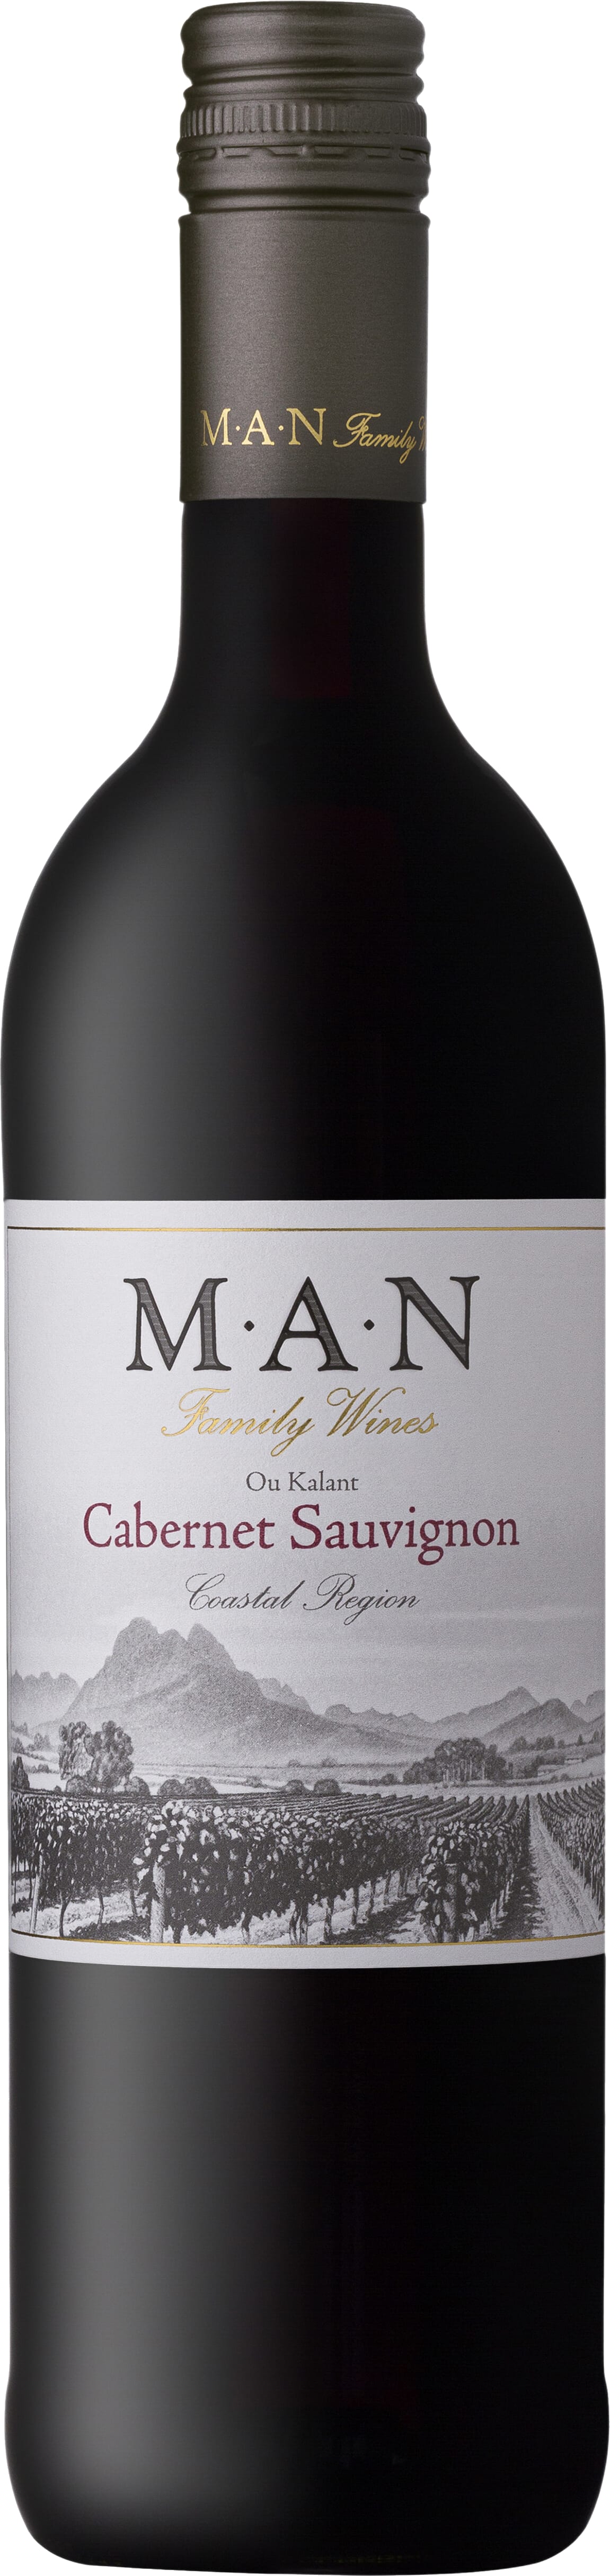 MAN Family Wines Ou Kalant Cabernet Sauvignon 2021 75cl - Buy MAN Family Wines Wines from GREAT WINES DIRECT wine shop